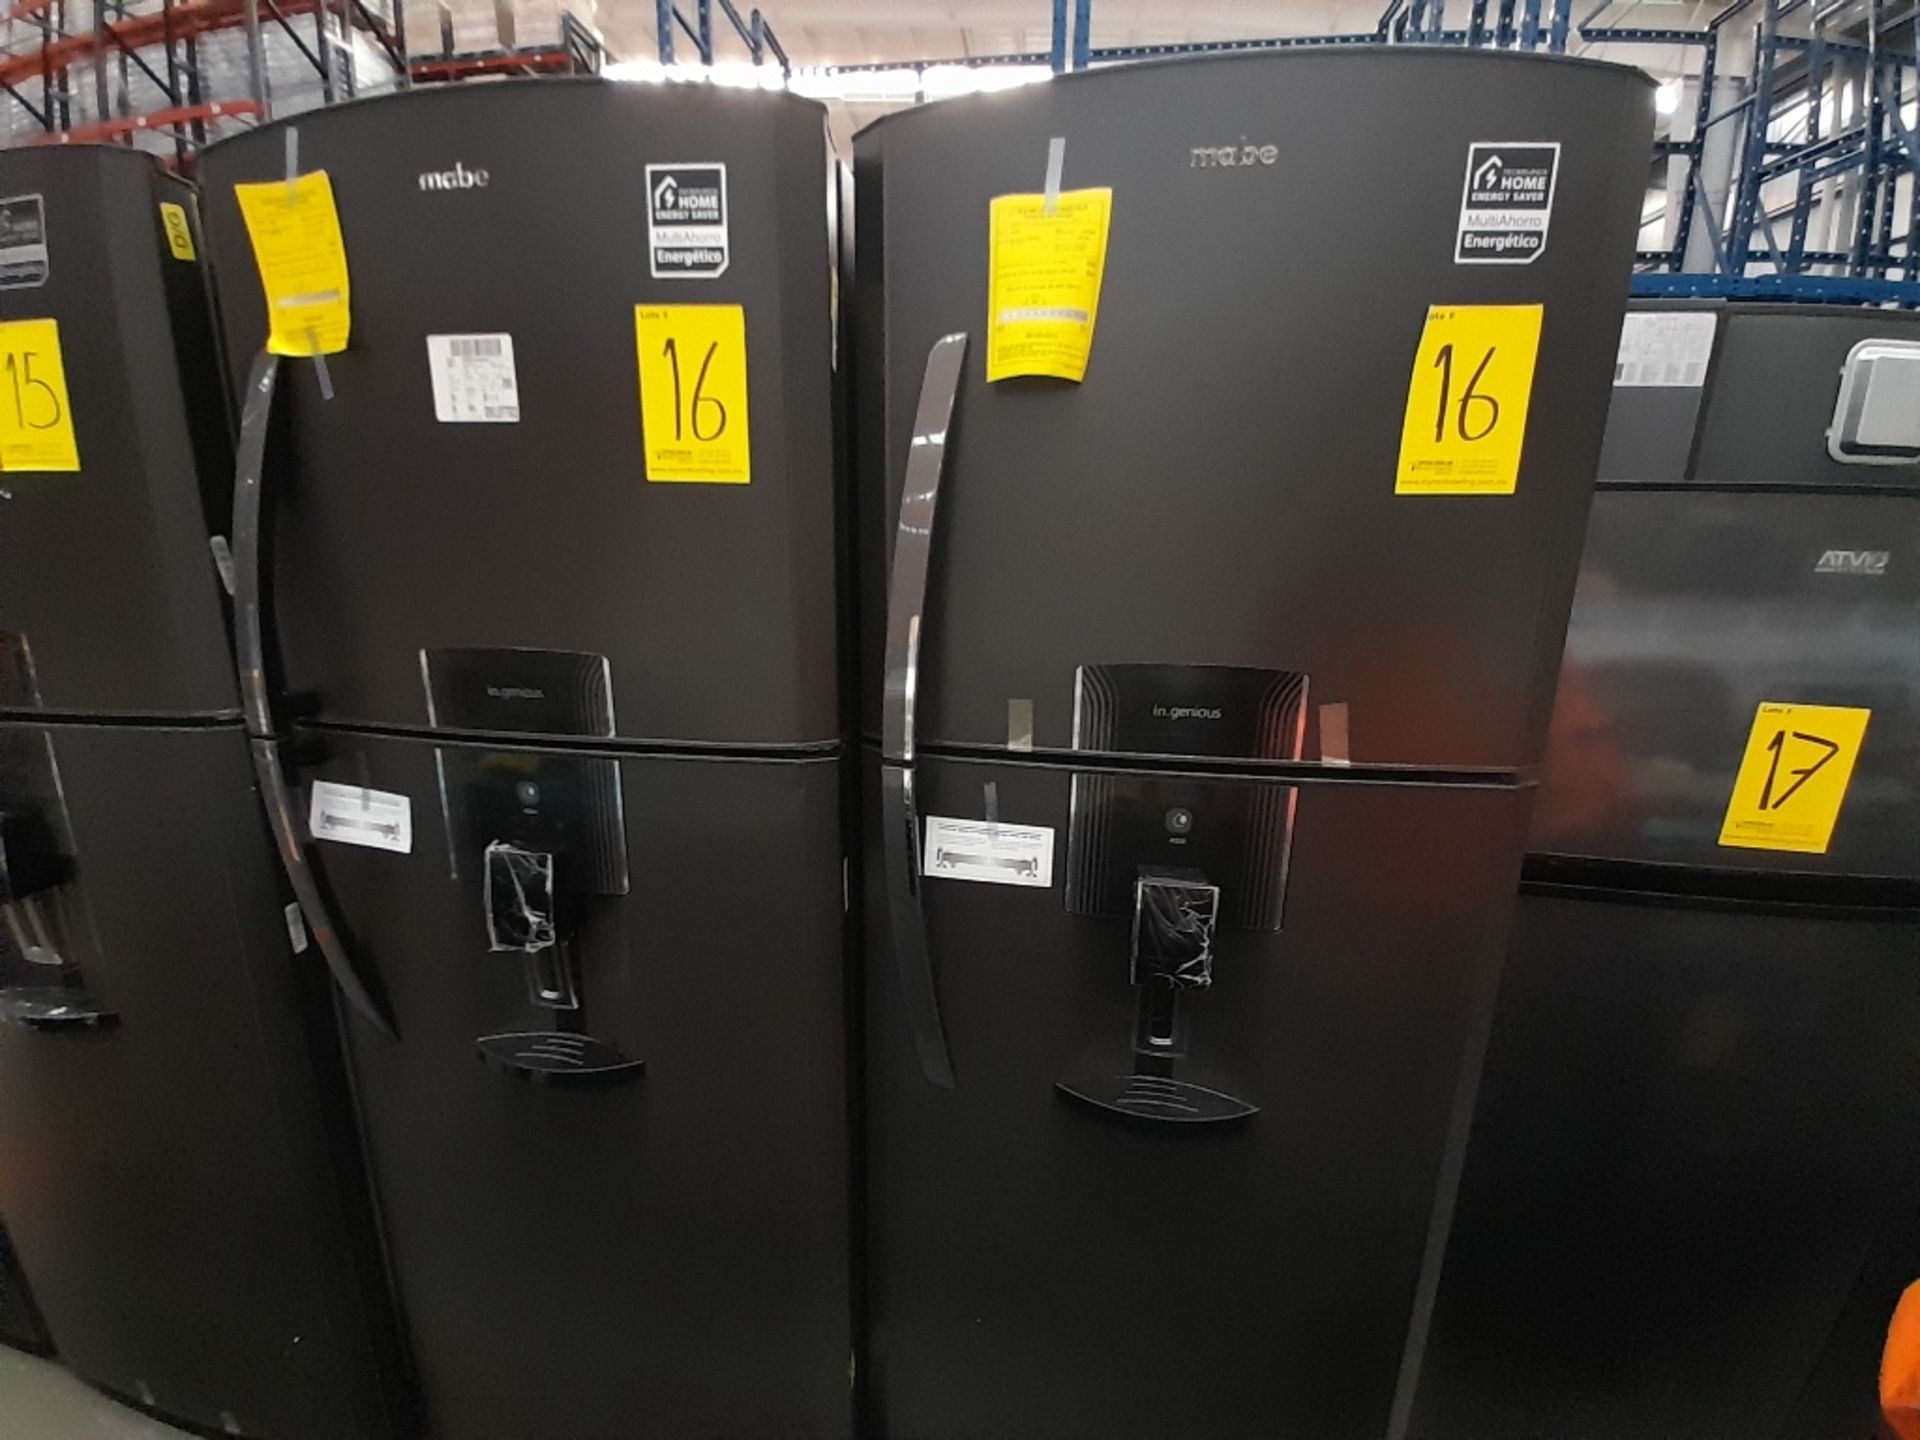 Lote de 2 refrigeradores contiene: 1 Refrigerador Con Dispensador De Agua Marca MABE, Modelo RM360F